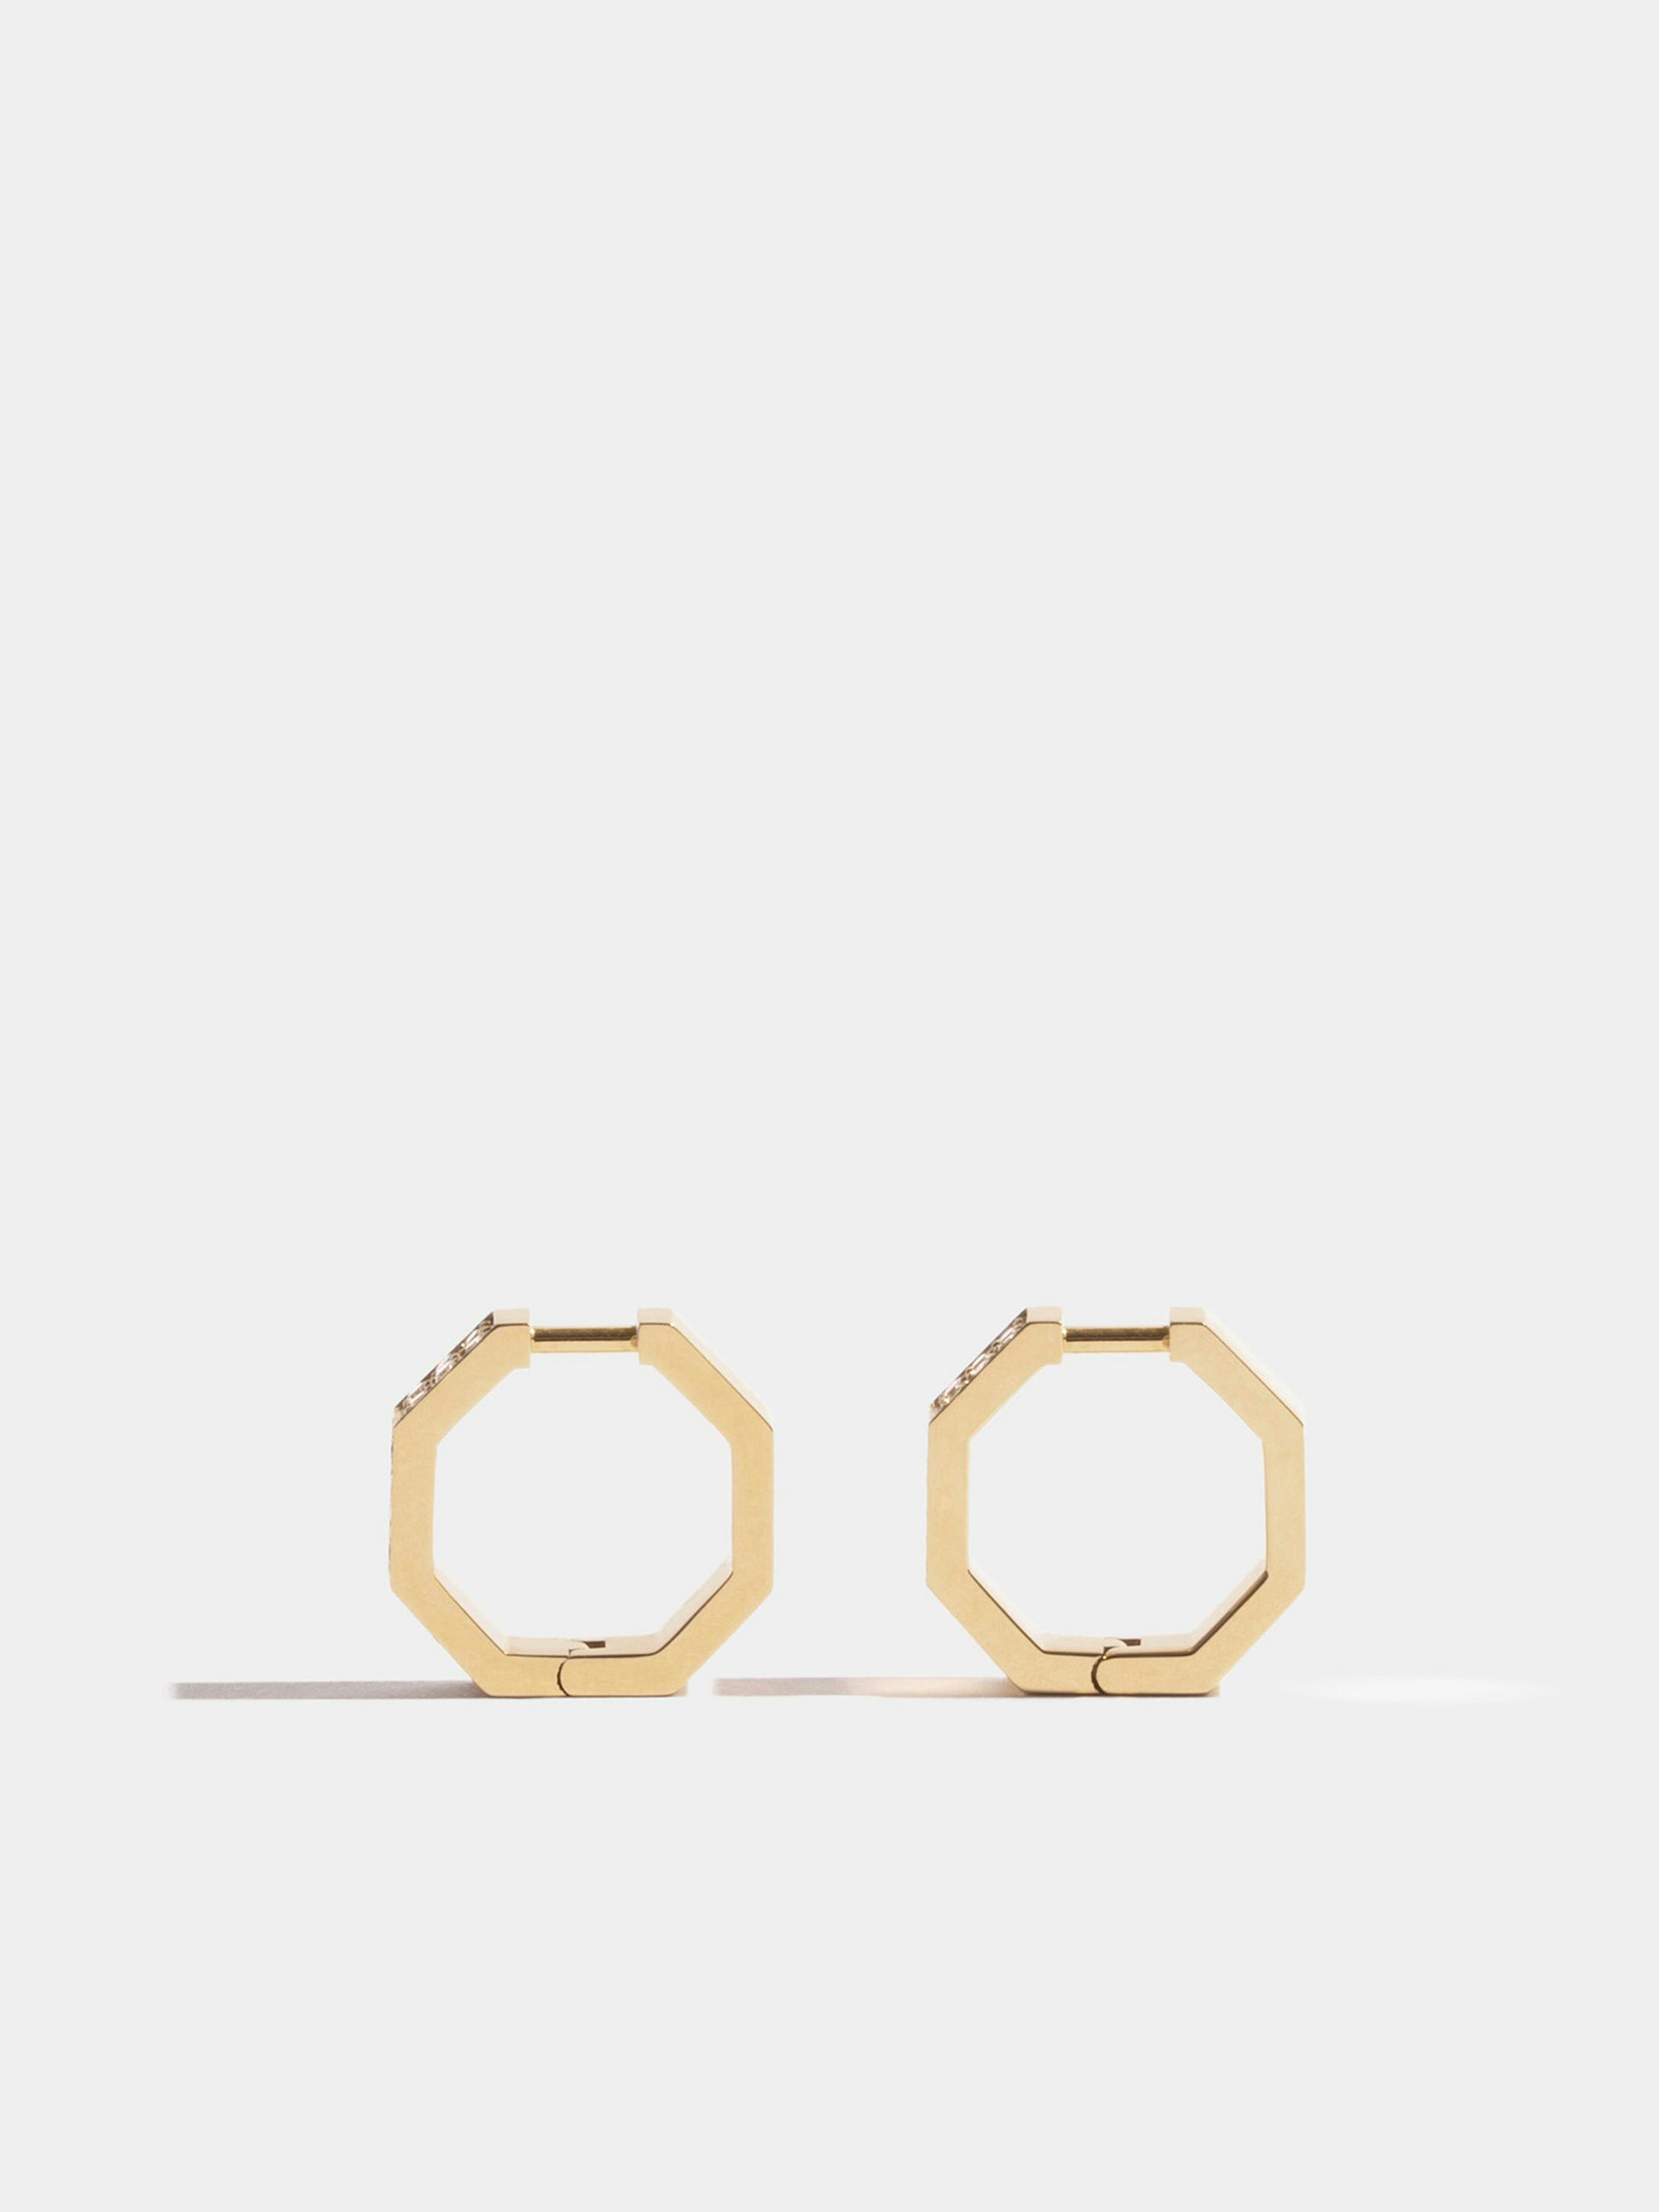 Boucles d'oreilles Octogone en Or jaune éthique 18 carats certifié Fairmined (13mm) et pavées de diamants de synthèse, la paire.